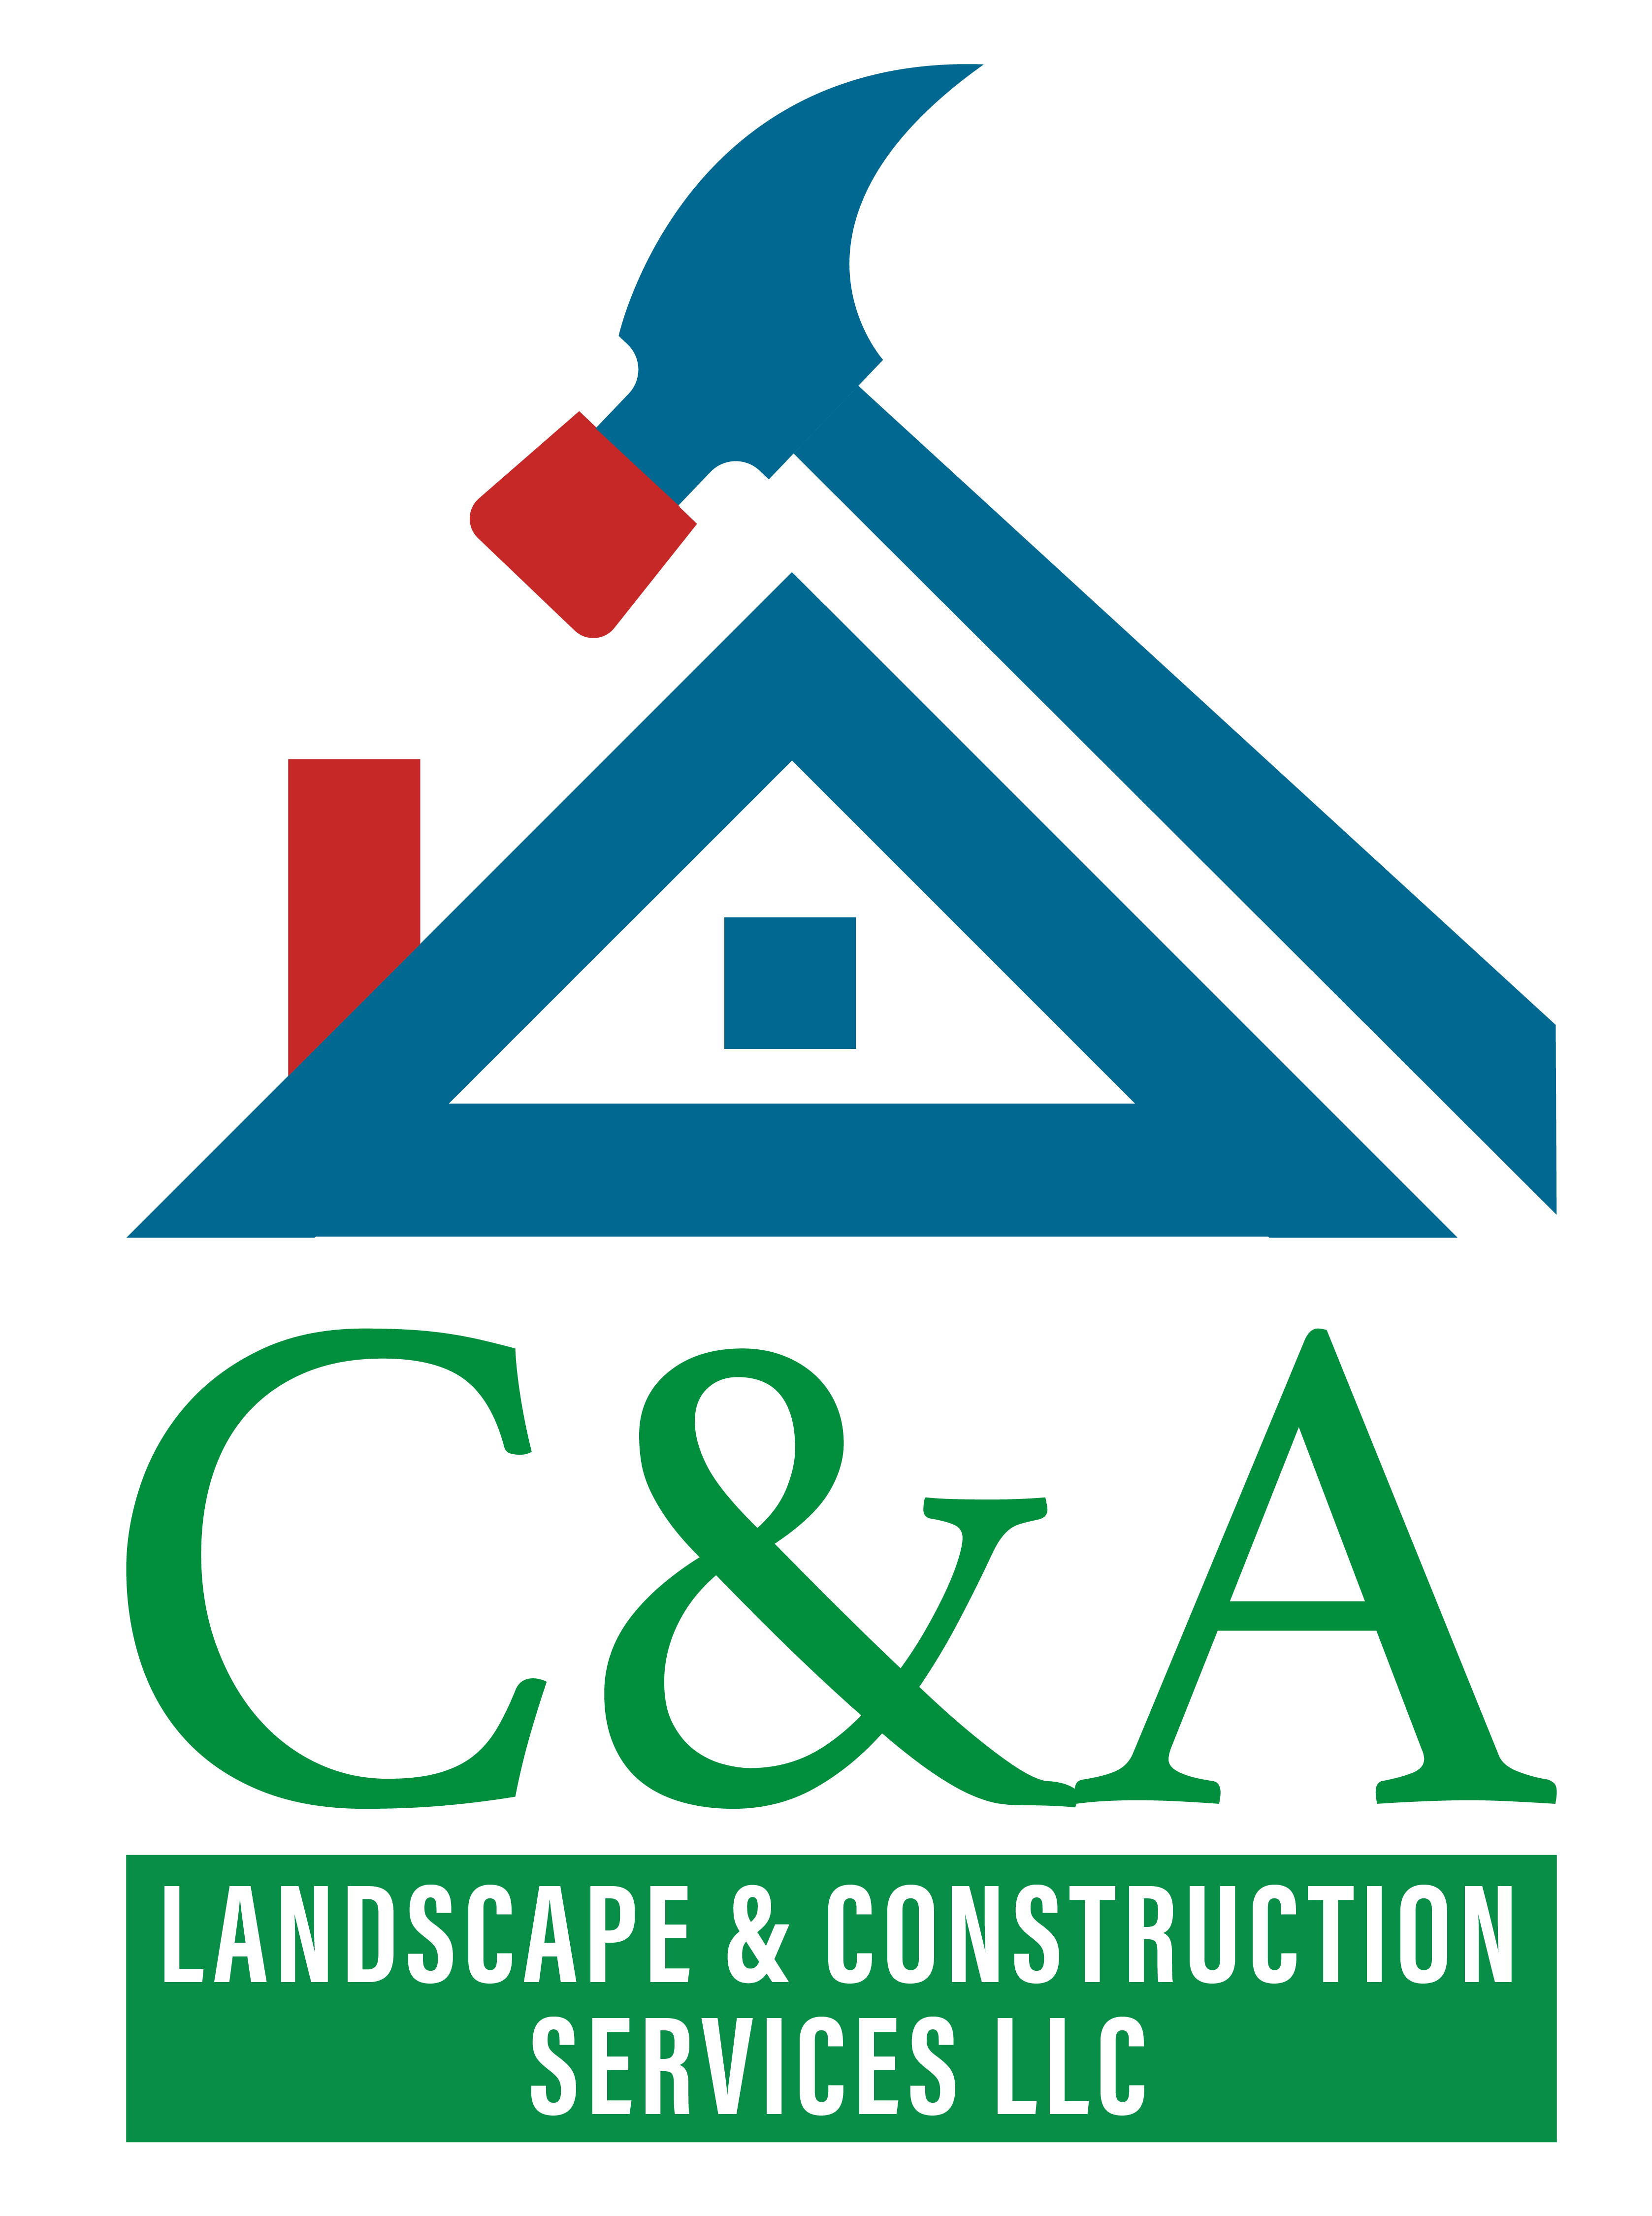 C&A LANDSCAPE & CONSTRUCTION SERVICES LLC